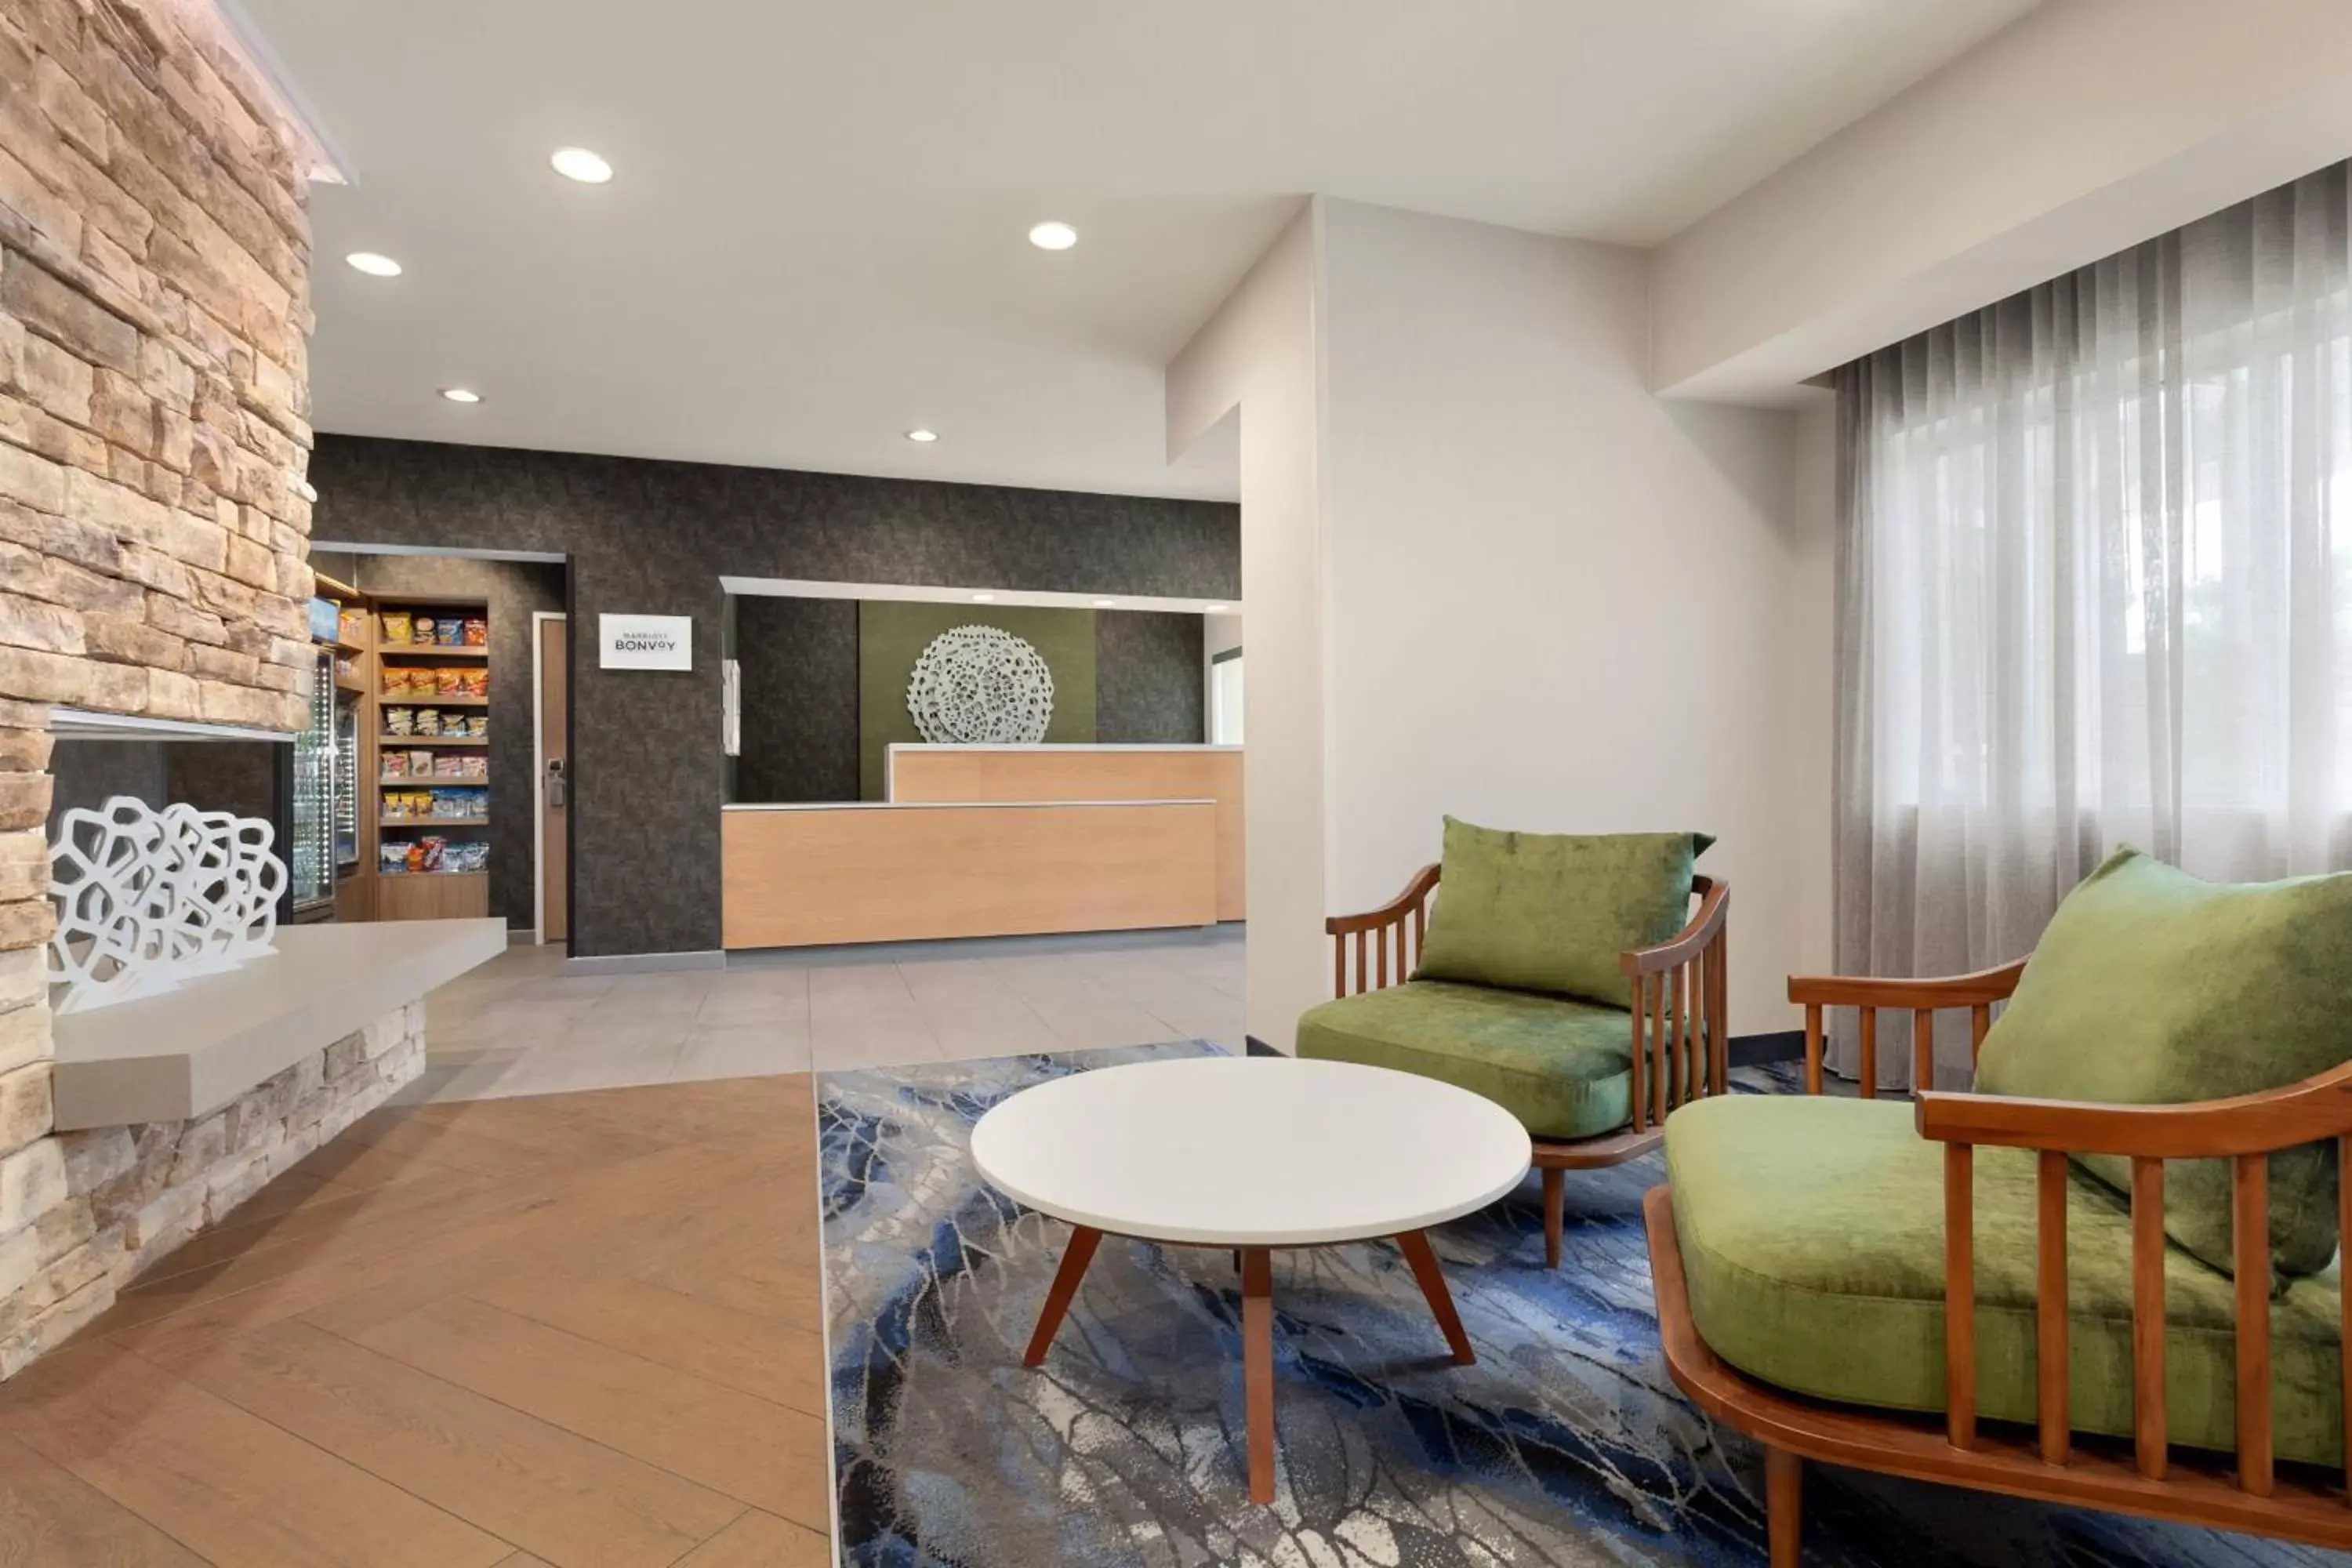 Lobby or reception, Lobby/Reception in Fairfield Inn by Marriott Visalia Sequoia